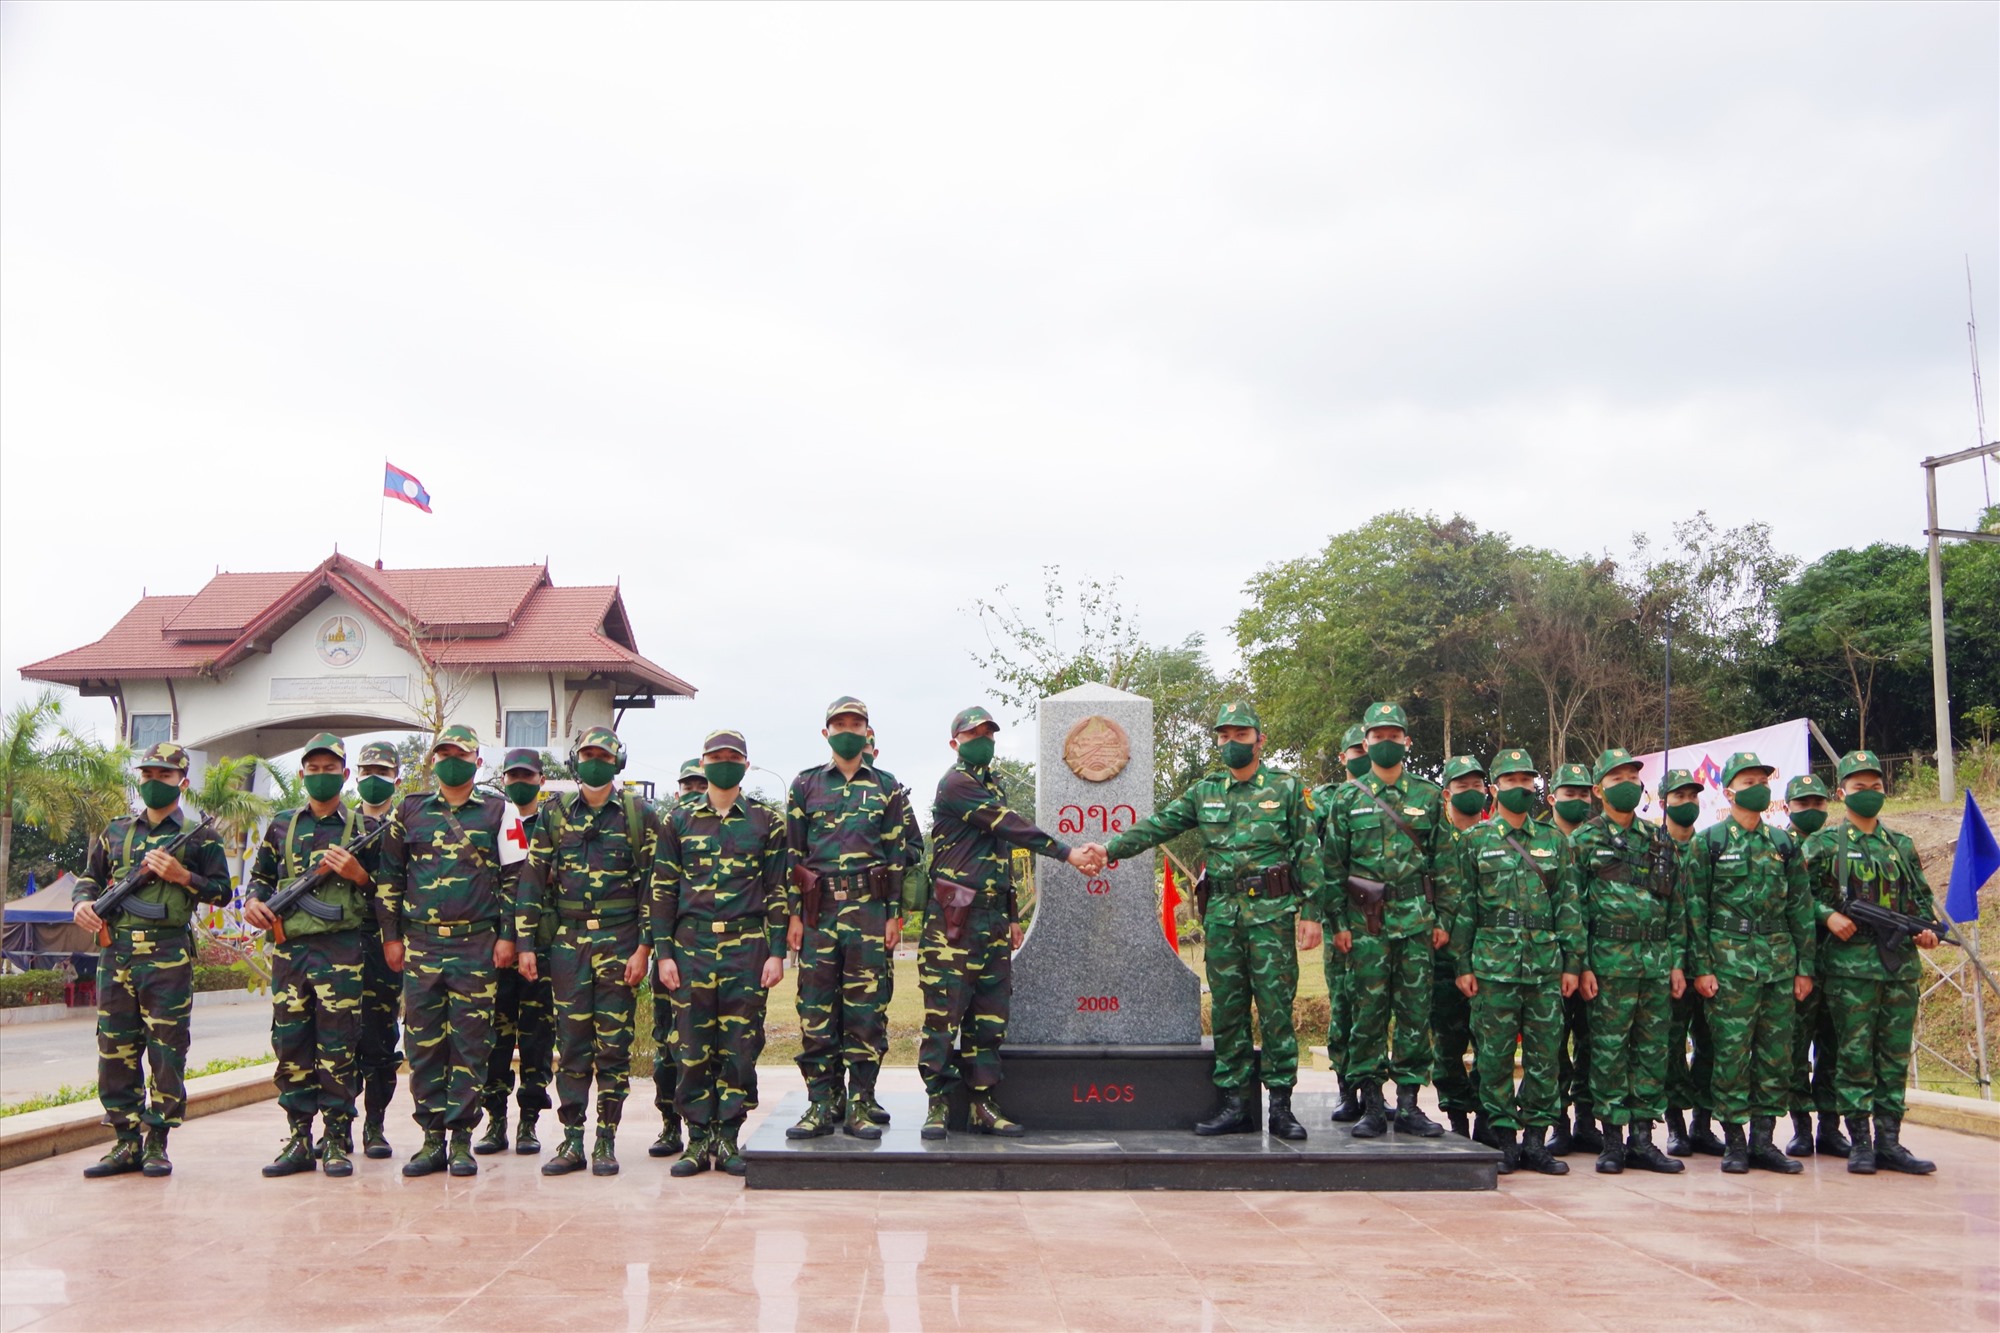 Lực lượng Bộ đội Biên phòng tỉnh và lực lượng vũ trang tỉnh Savannakhet (Lào) tuần tra chung vì biên giới hòa bình, hữu nghị, hợp tác cùng phát triển - Ảnh: Phước Trung